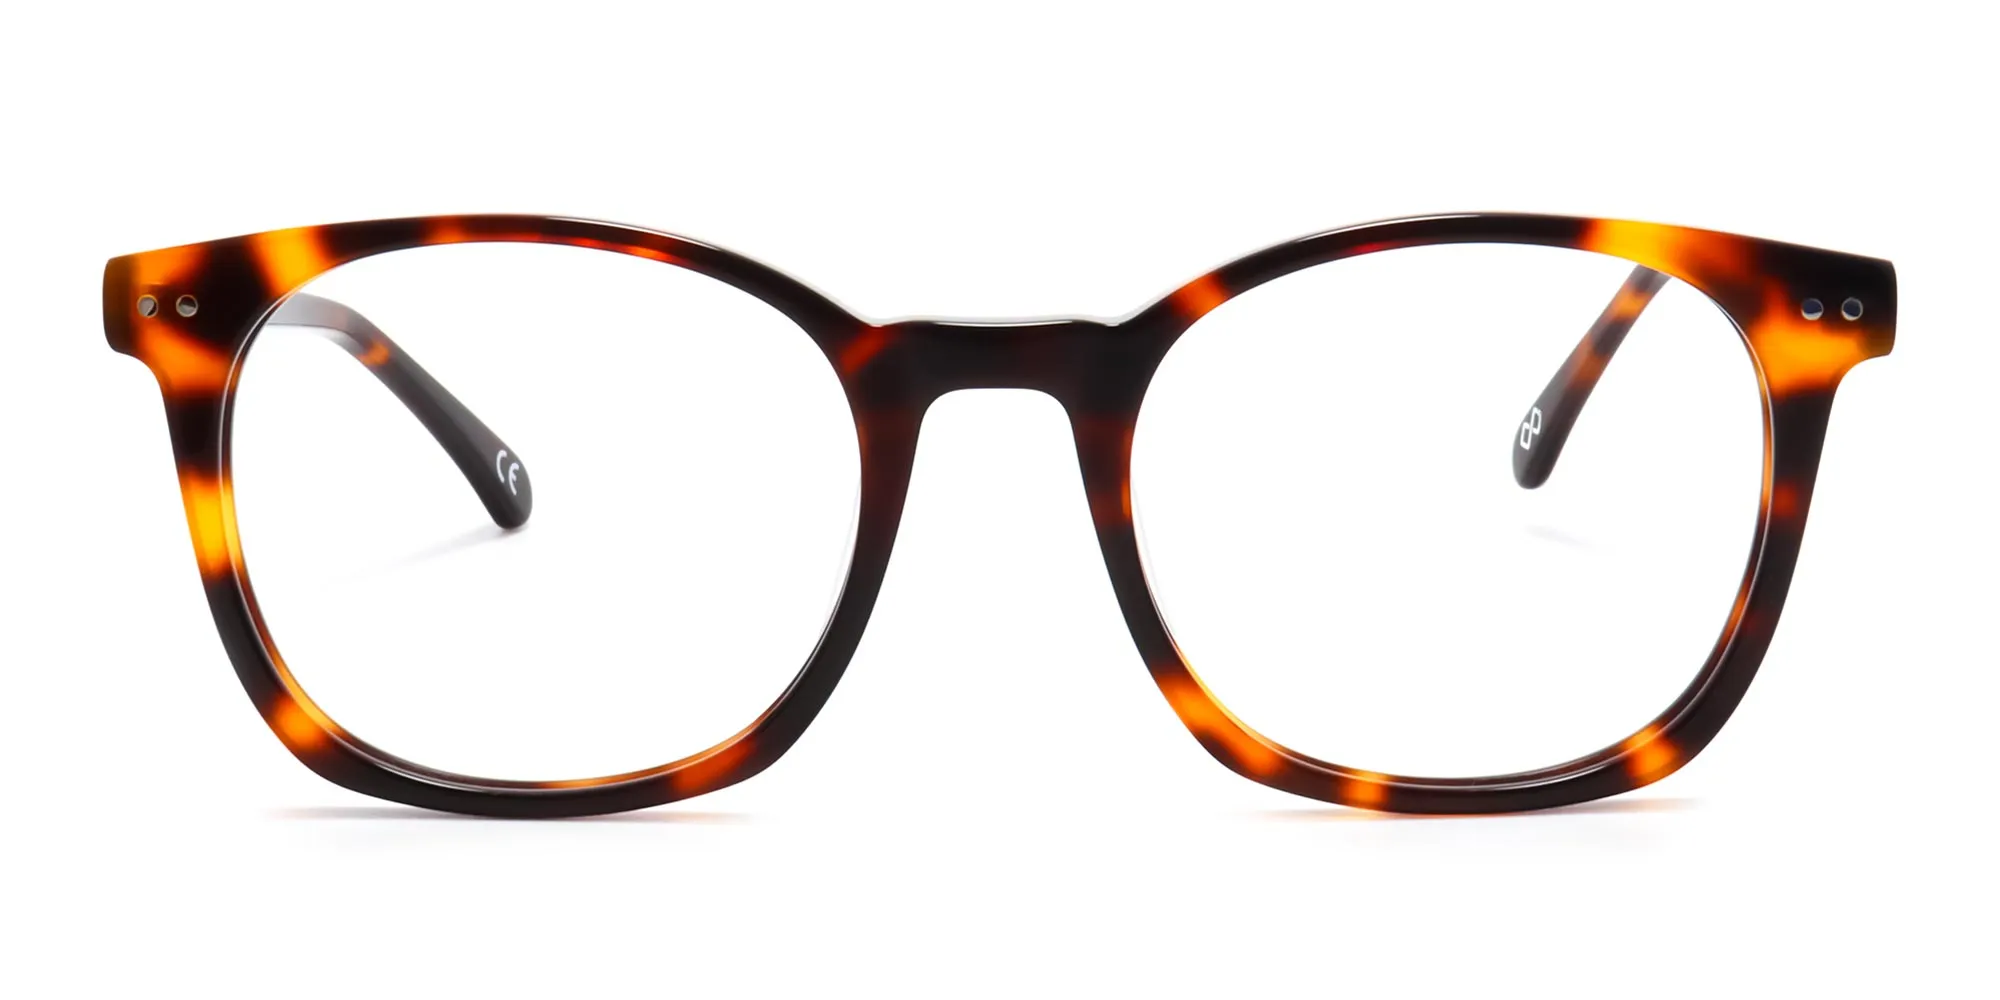 Tortoise shell Thin Frame Glasses-2